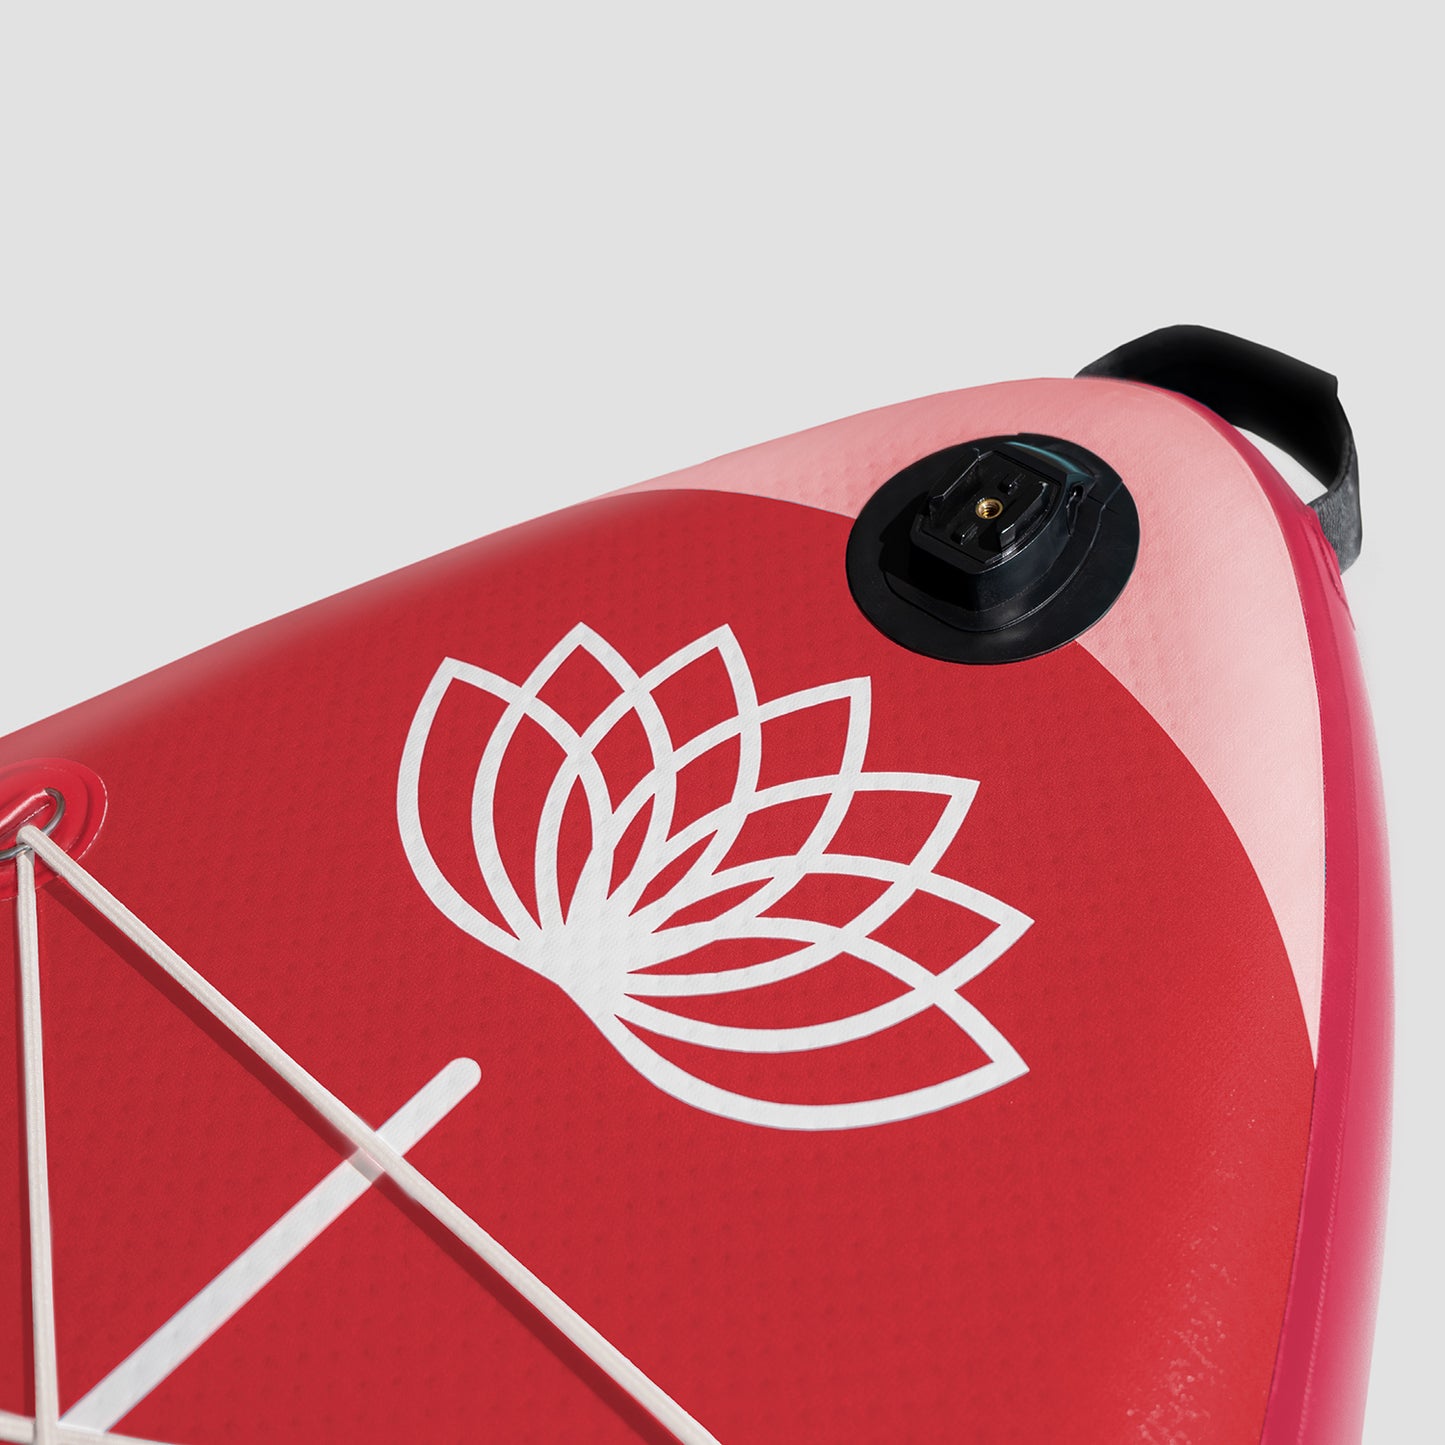 "Système d'accroche pour caméra GoPro sur le pont des SUP Yogaterrae avec le symbole végétal et aquatique du lotus"